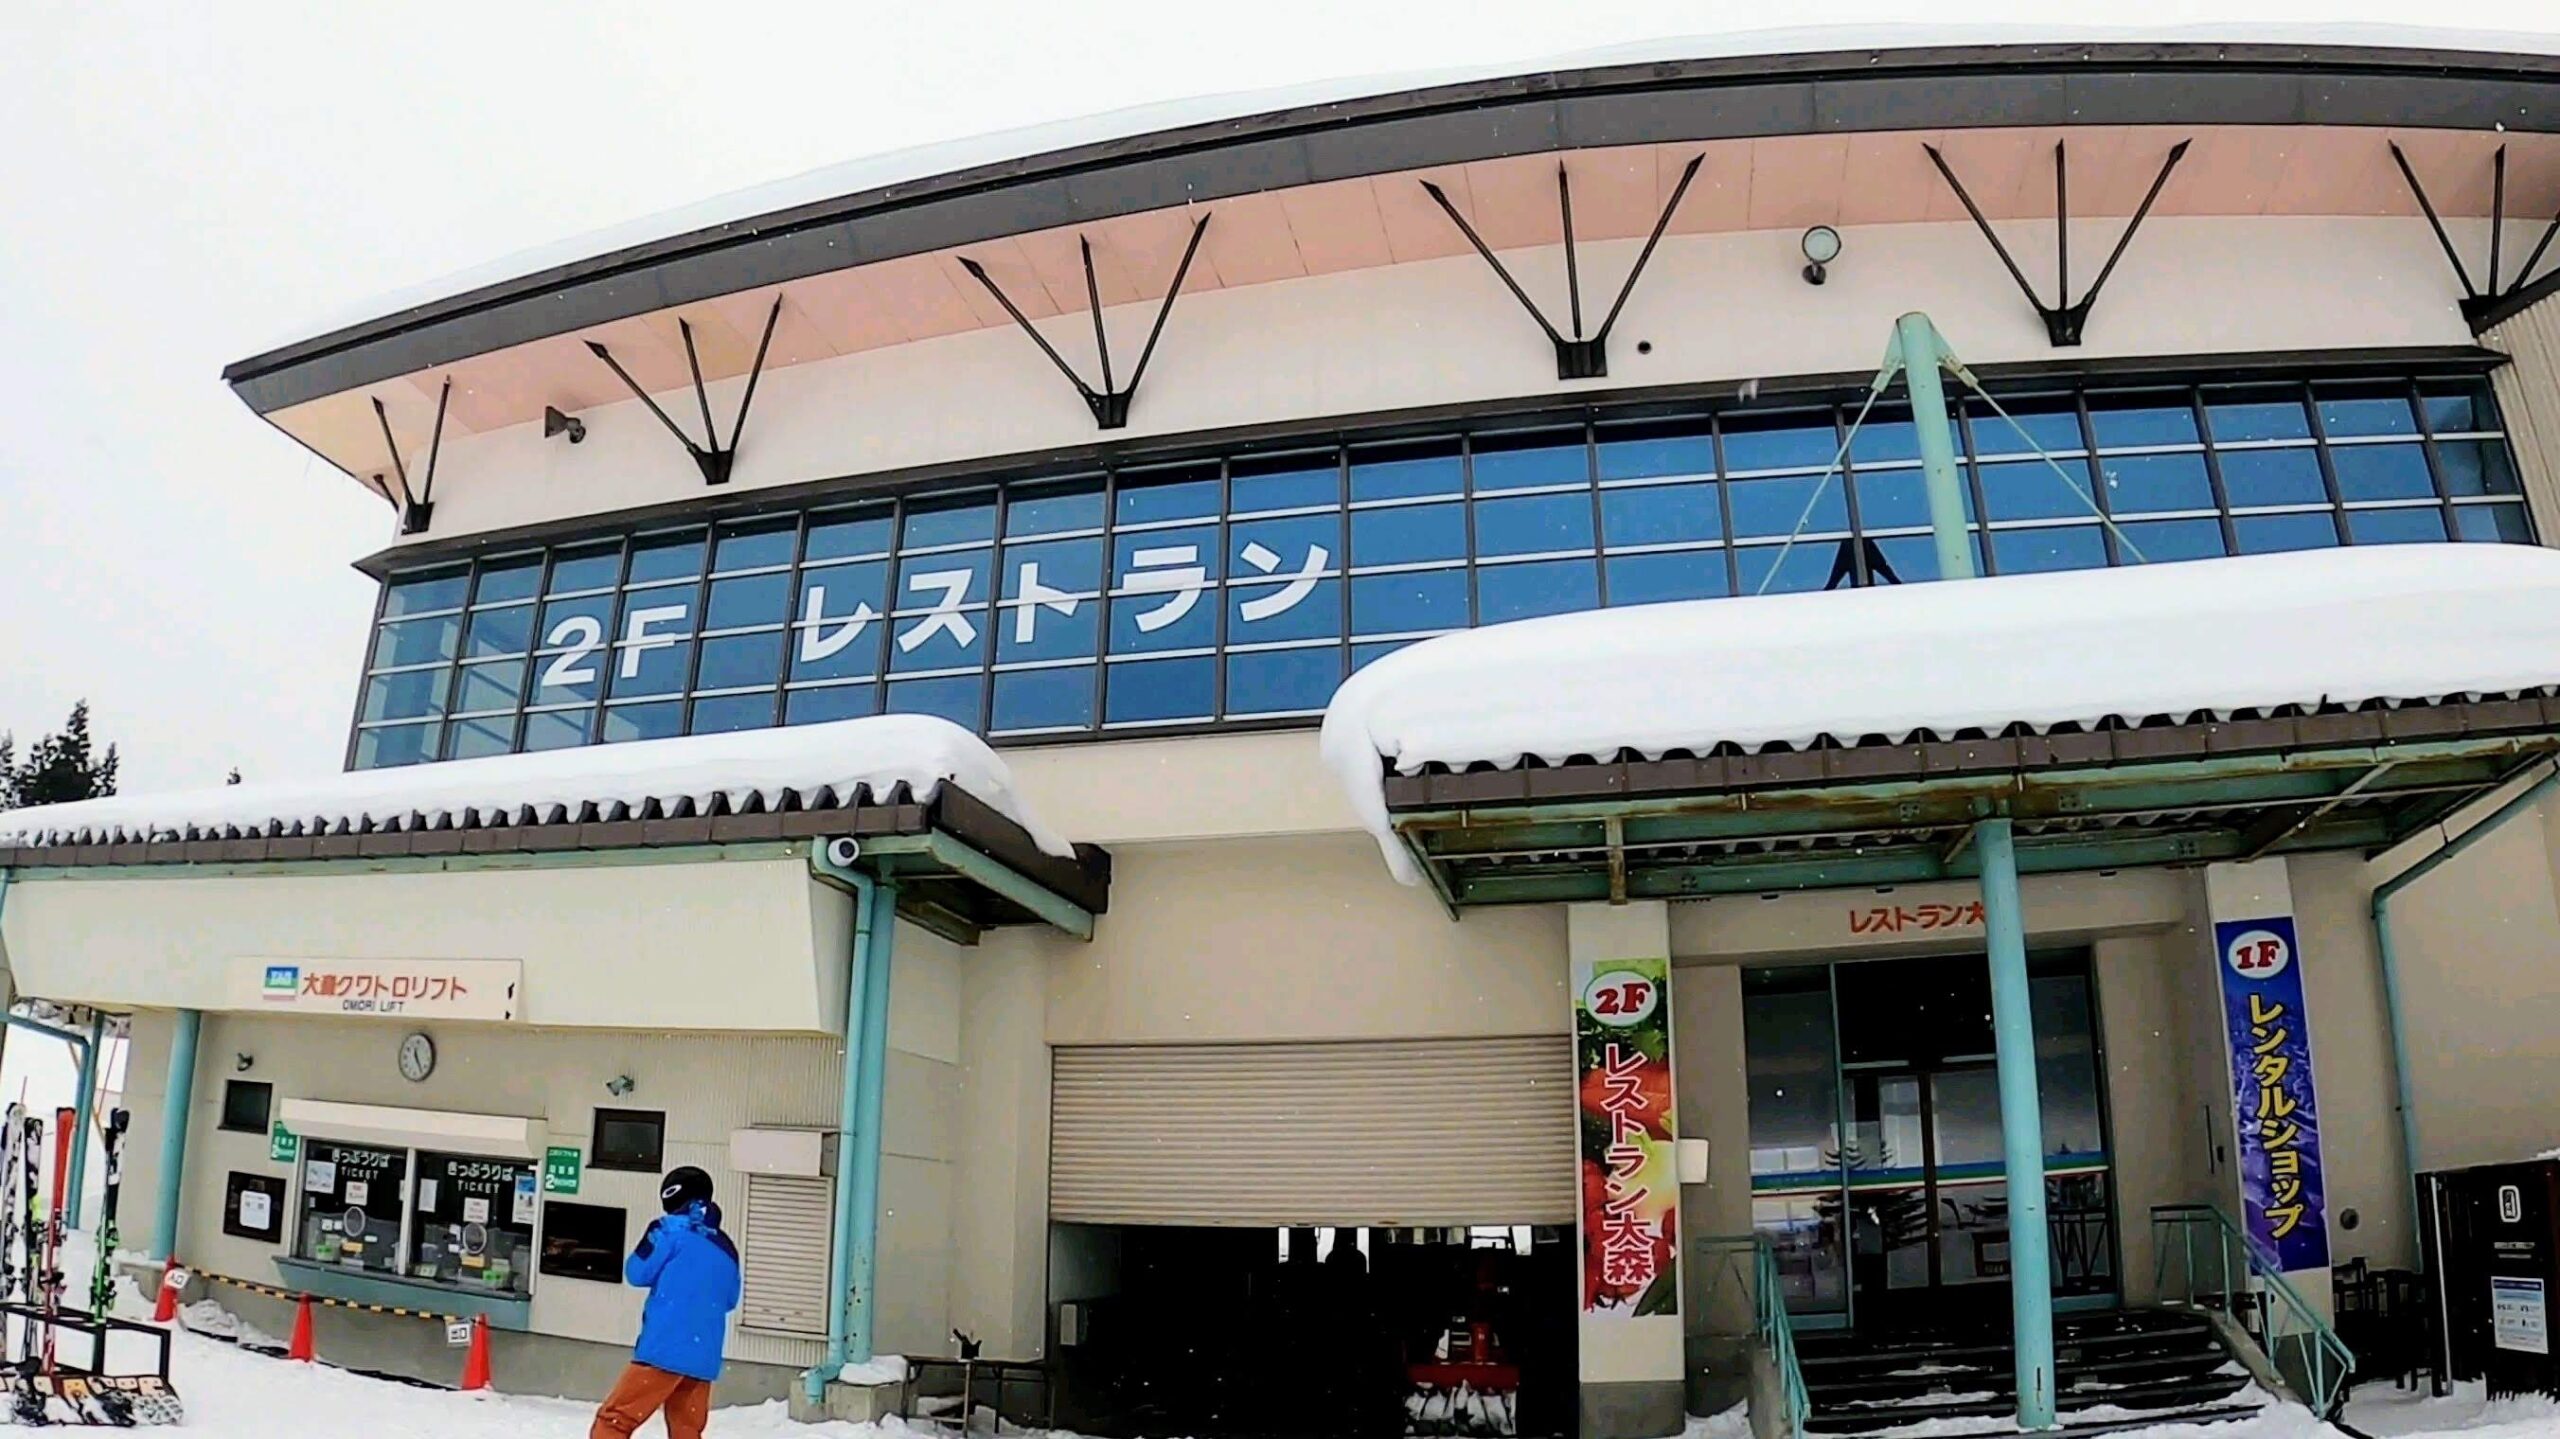 【レストラン大森ファミリー向け 雪の公園】山形蔵王温泉スキー場 Omori-Restaurant-at-Yamagata-Zao-Onsen-Ski-Resort-is-convenient-and-family-friendly.jpg